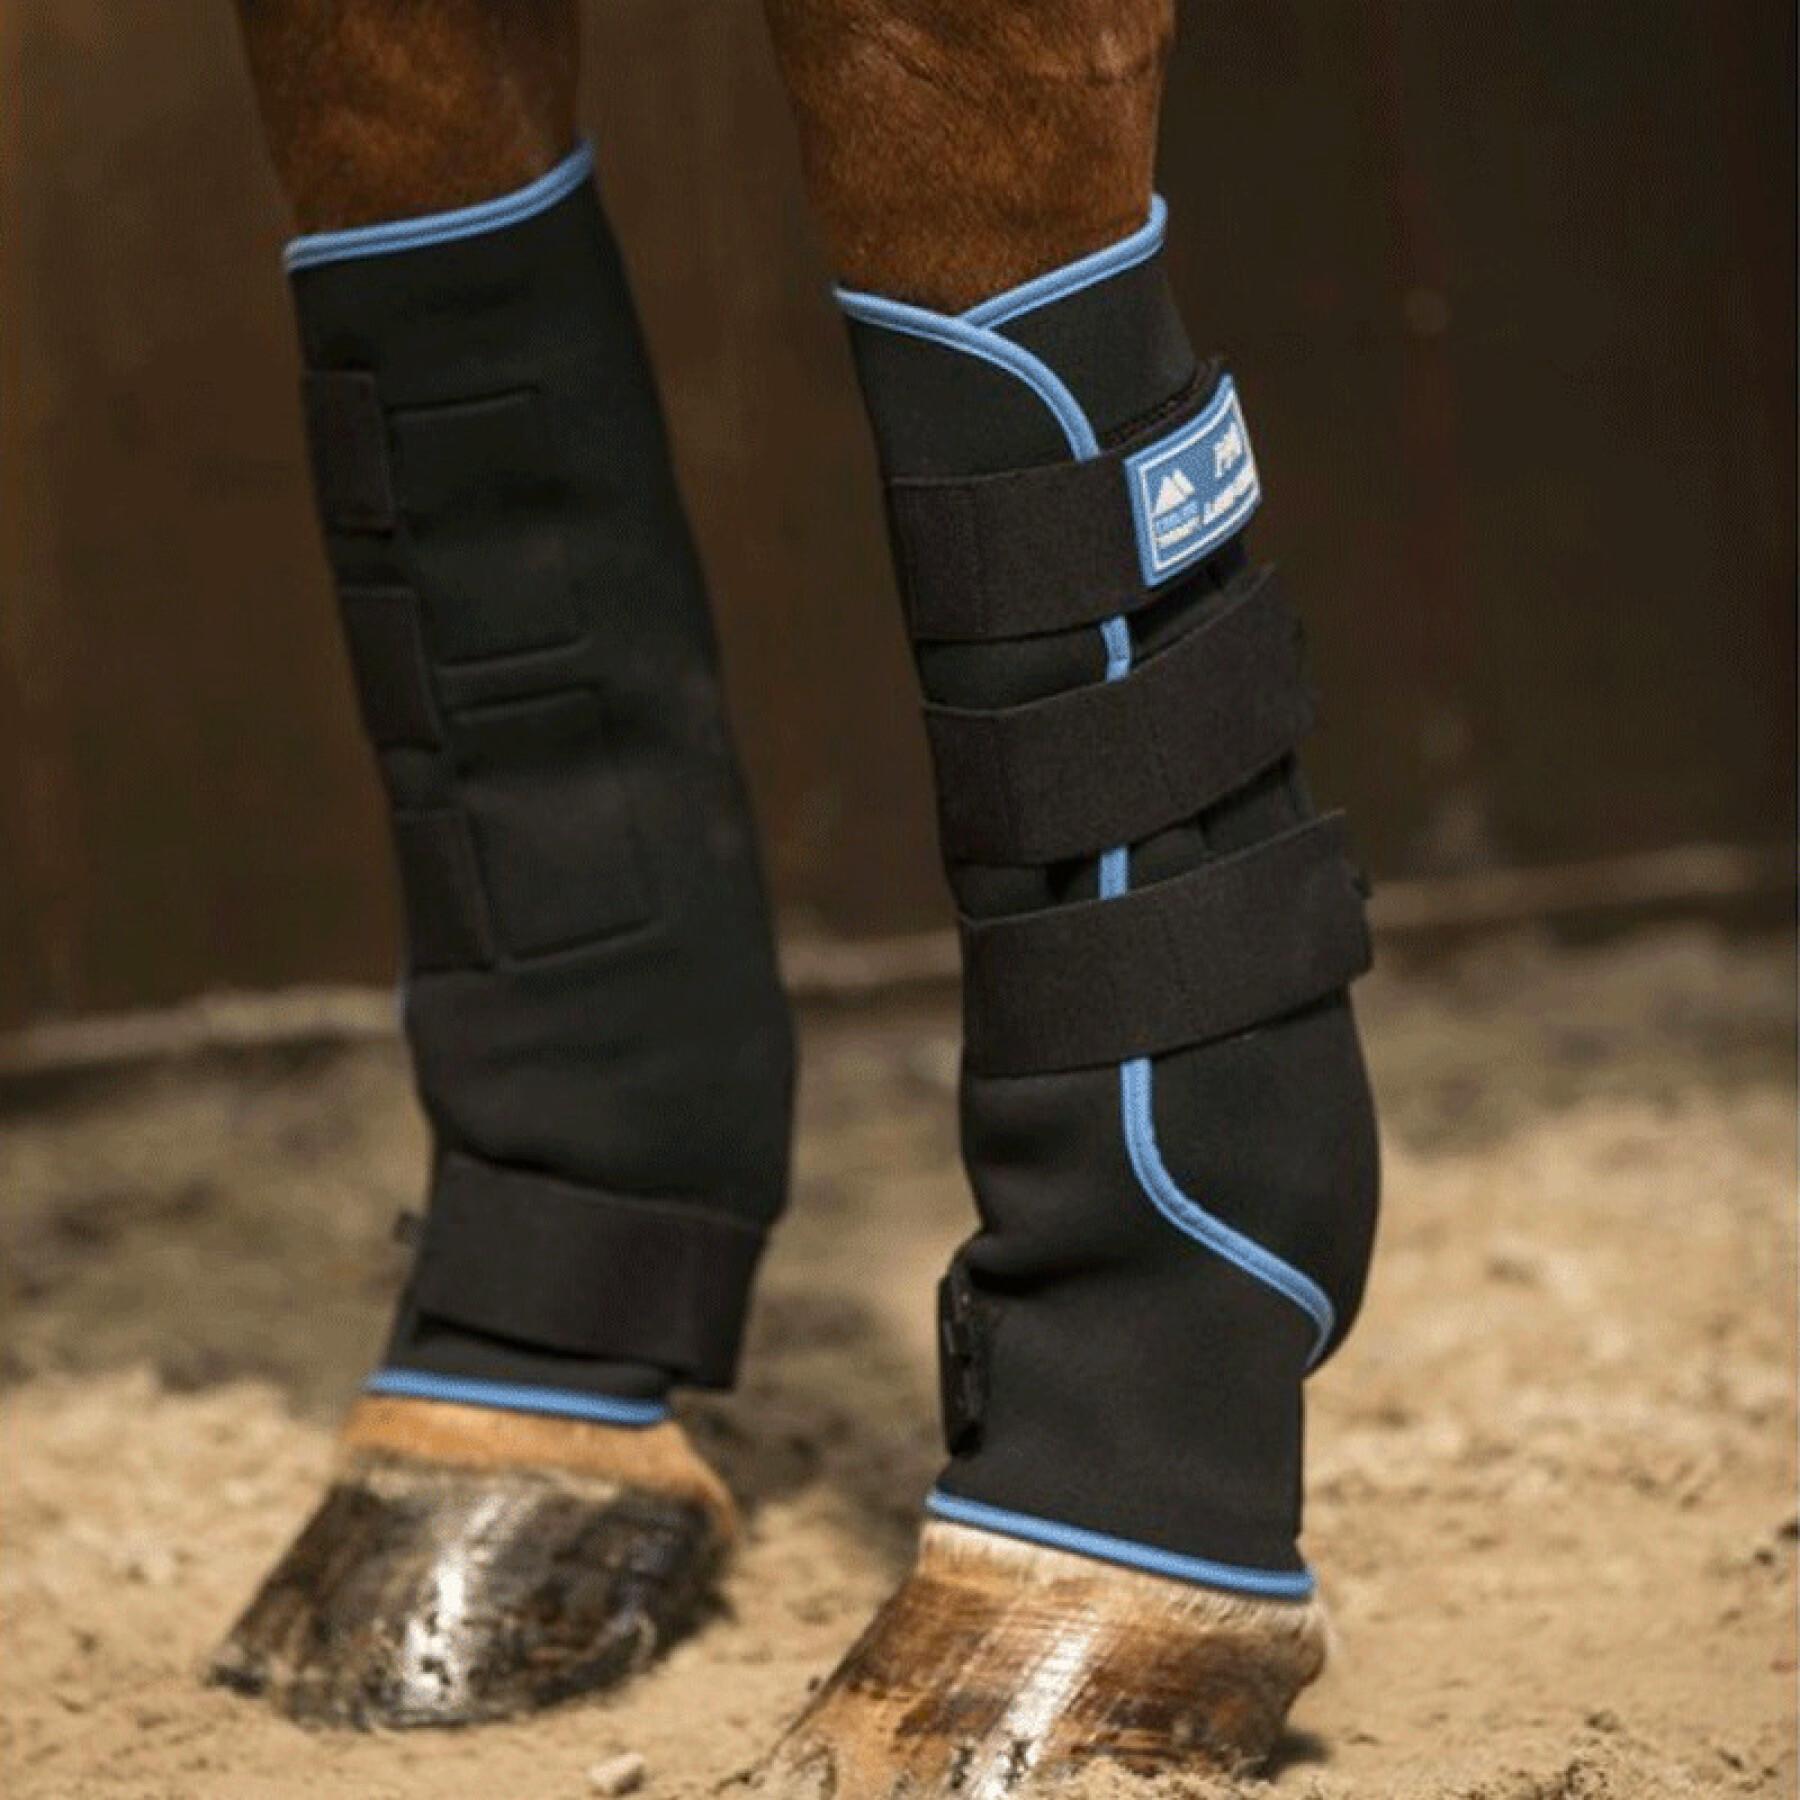 Paar slobkousen voor rustende paarden Lami-cell Ice Boots